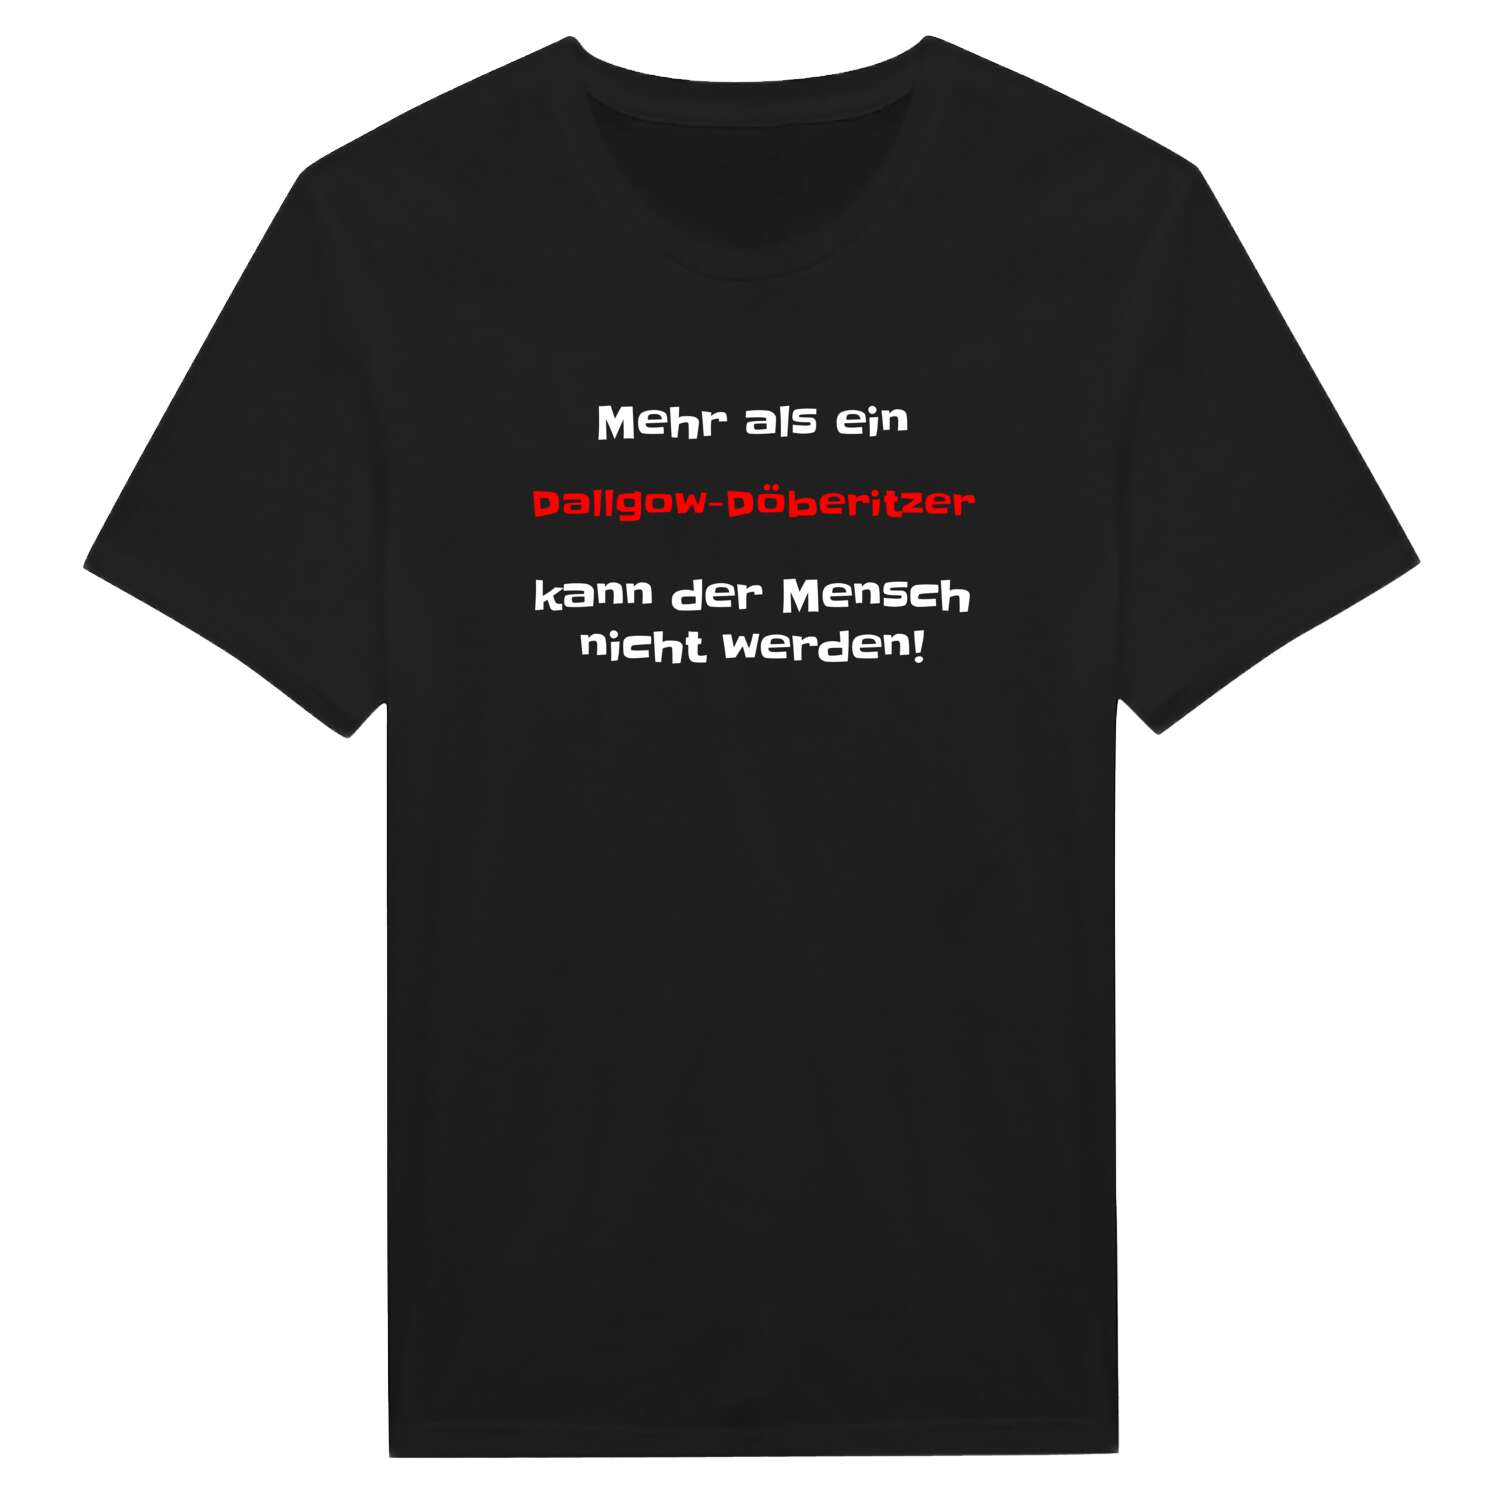 Dallgow-Döberitz T-Shirt »Mehr als ein«